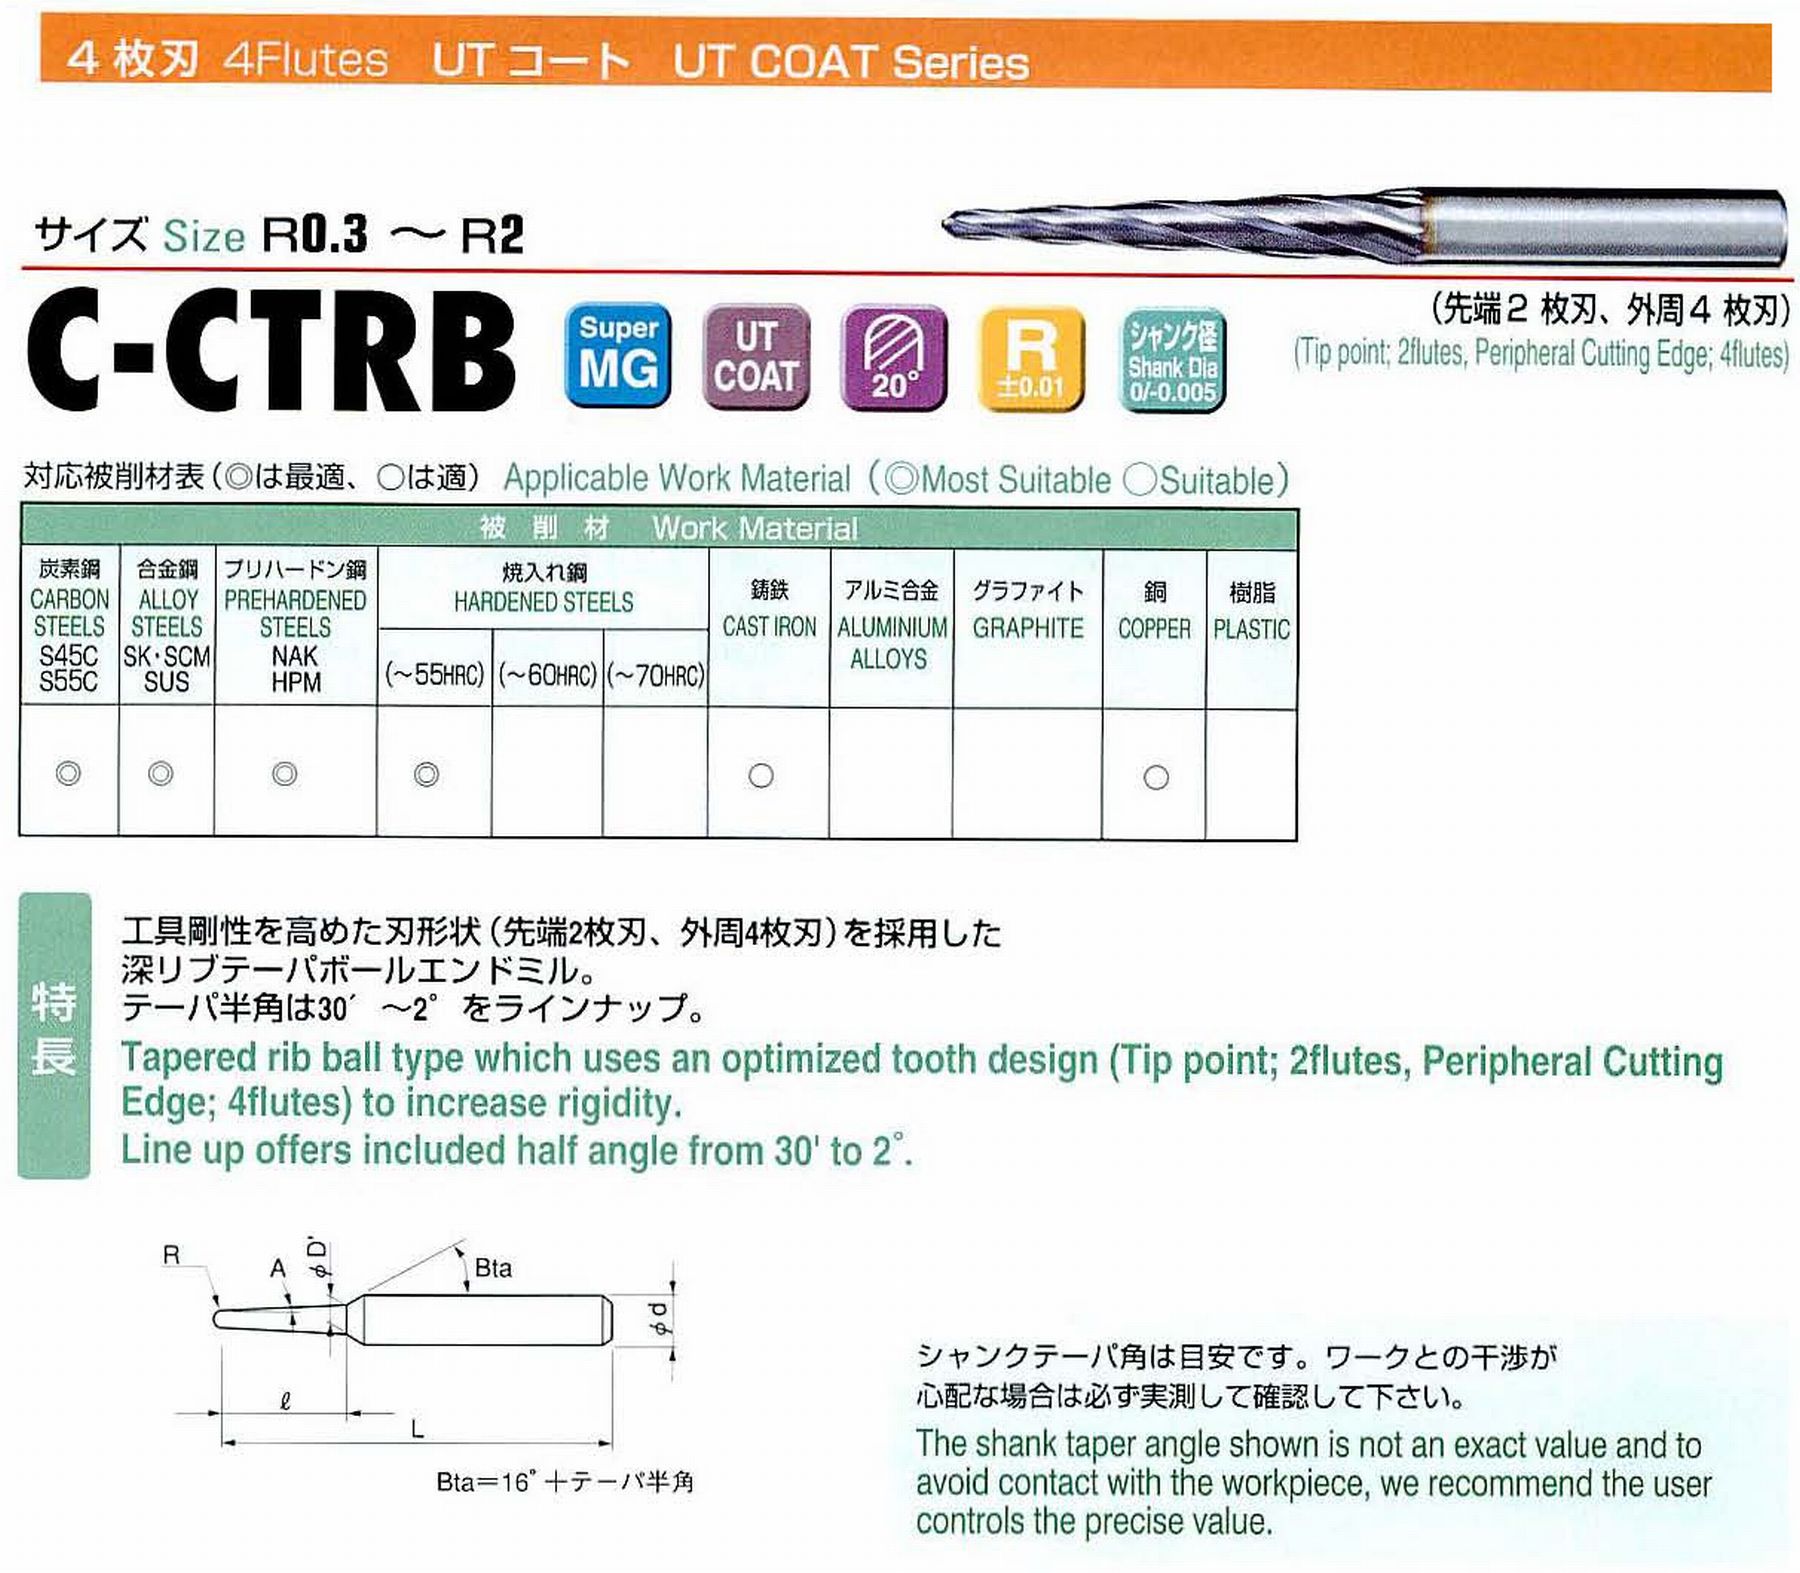 ユニオンツール 4枚刃 C-CTRB4012-12-1 ボール半径R0.6 テーパ半角30′ 刃長12 大端径1.40 全長45 シャンク径4